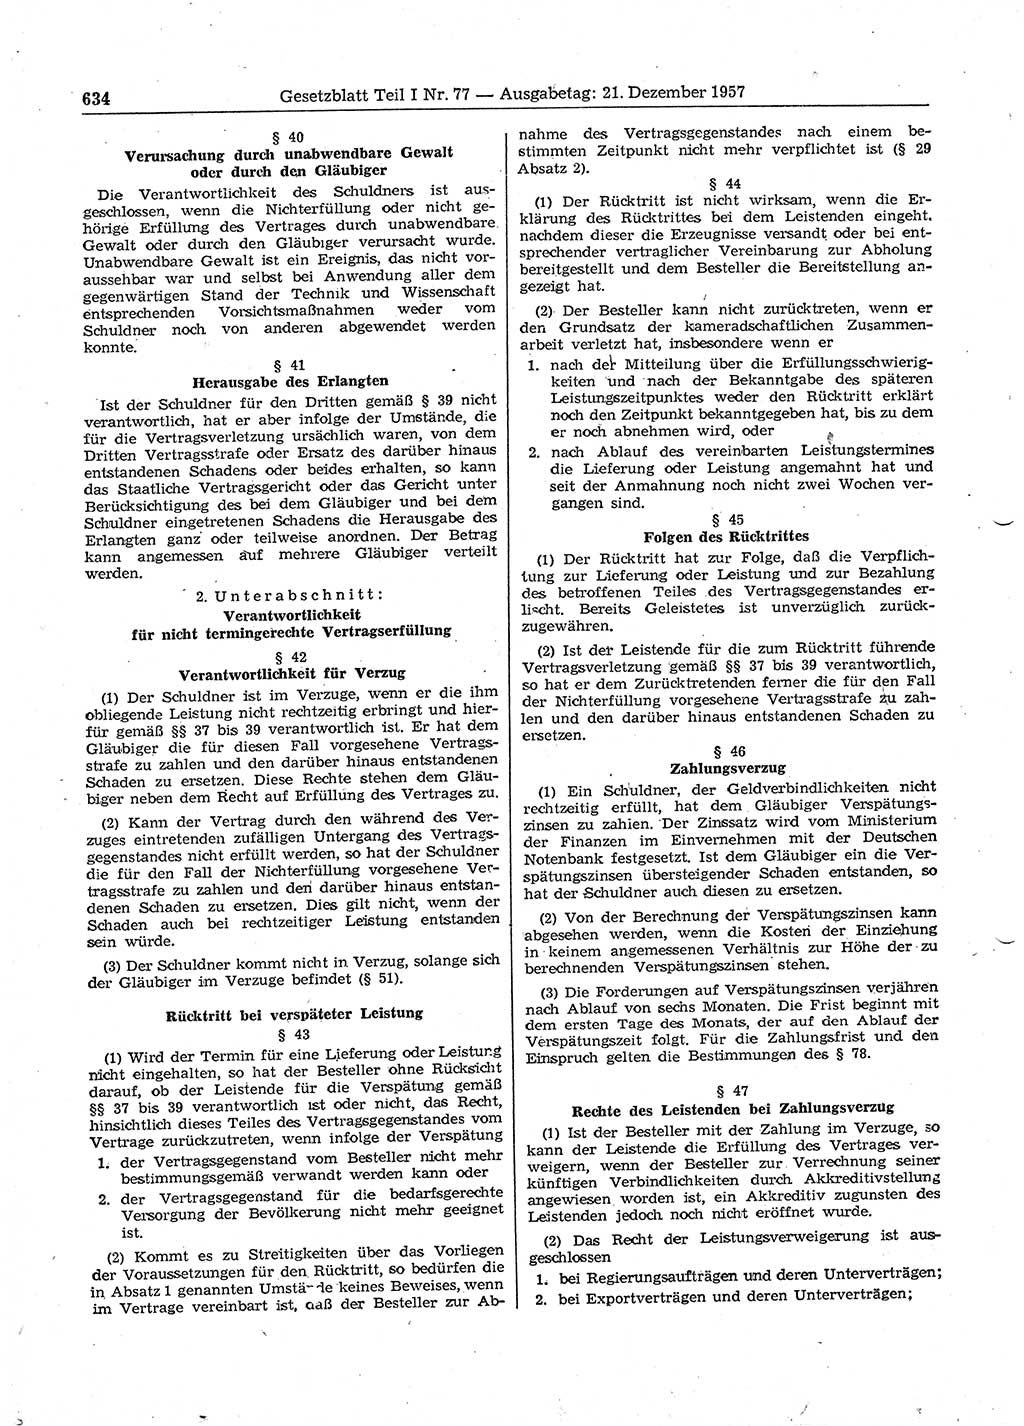 Gesetzblatt (GBl.) der Deutschen Demokratischen Republik (DDR) Teil Ⅰ 1957, Seite 634 (GBl. DDR Ⅰ 1957, S. 634)